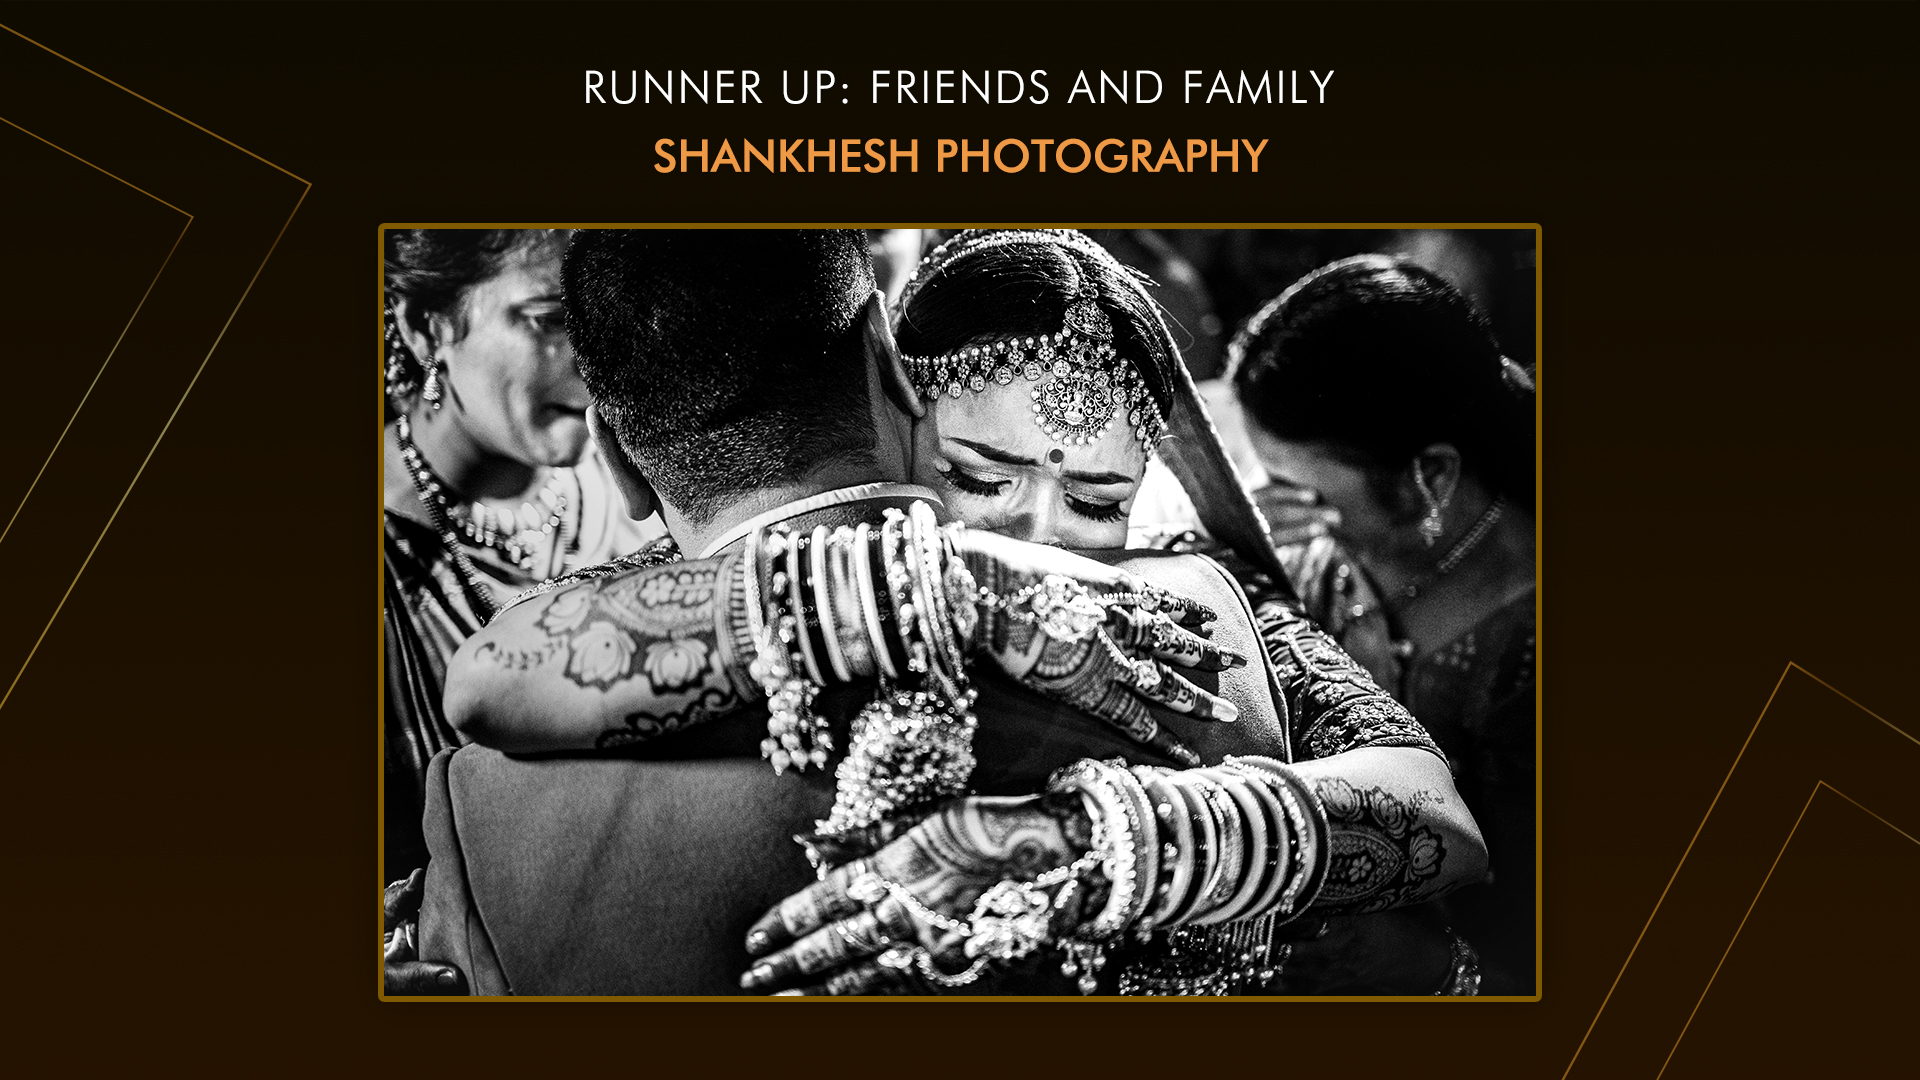 Shankhesh Photography